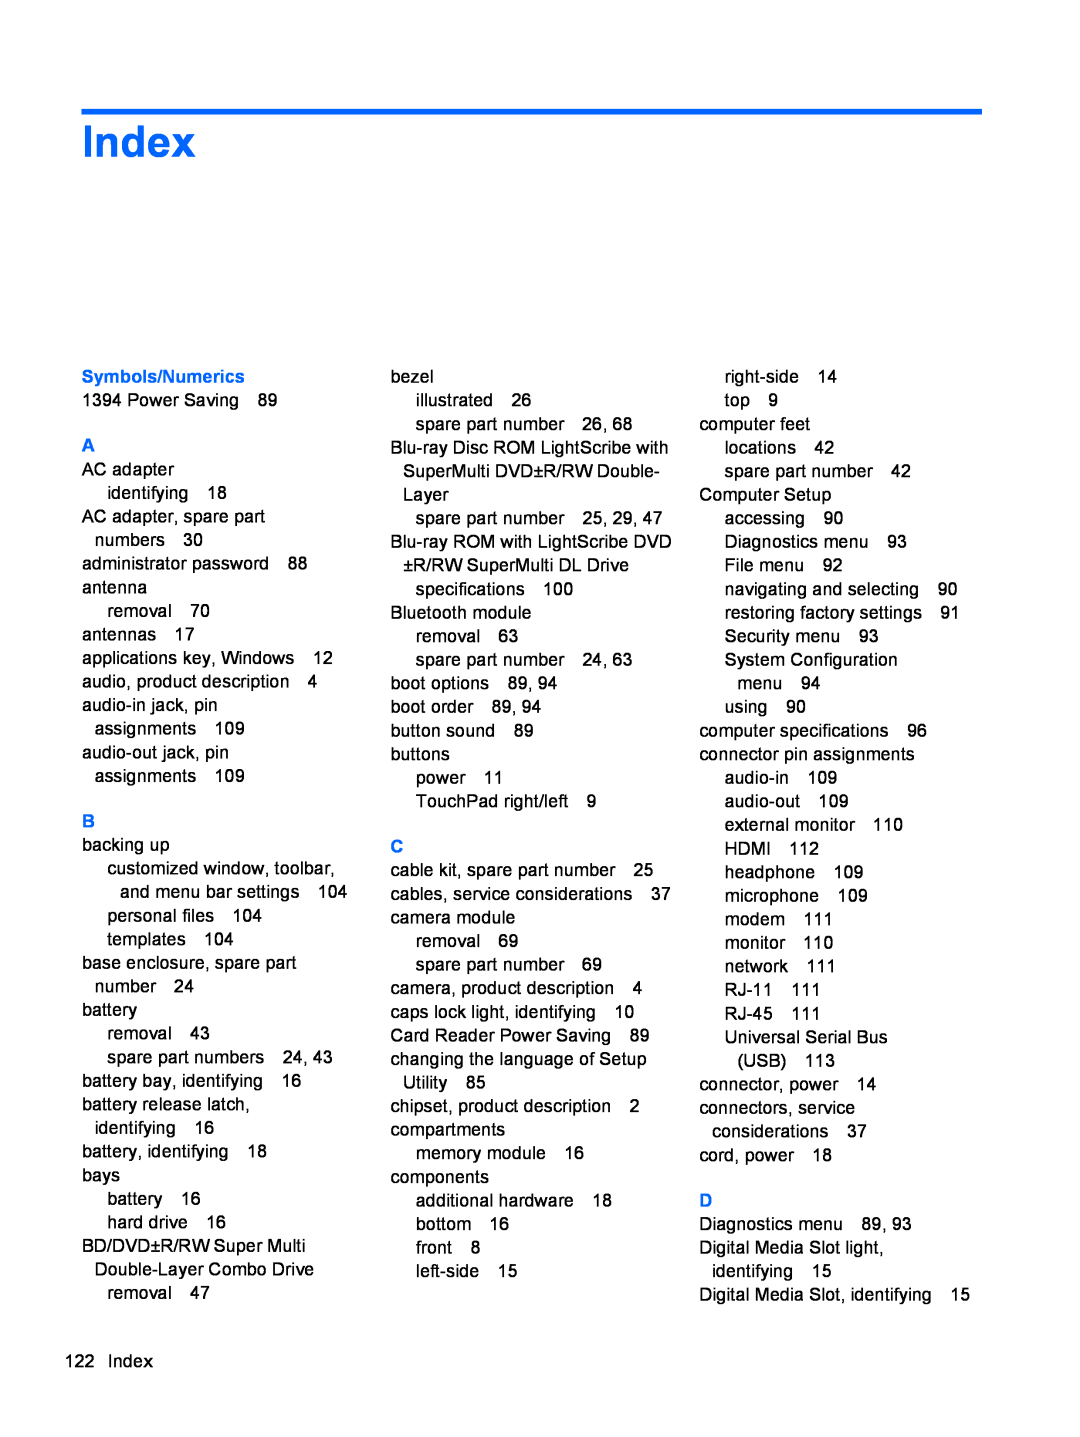 Compaq CQ42 manual Index, Symbols/Numerics 